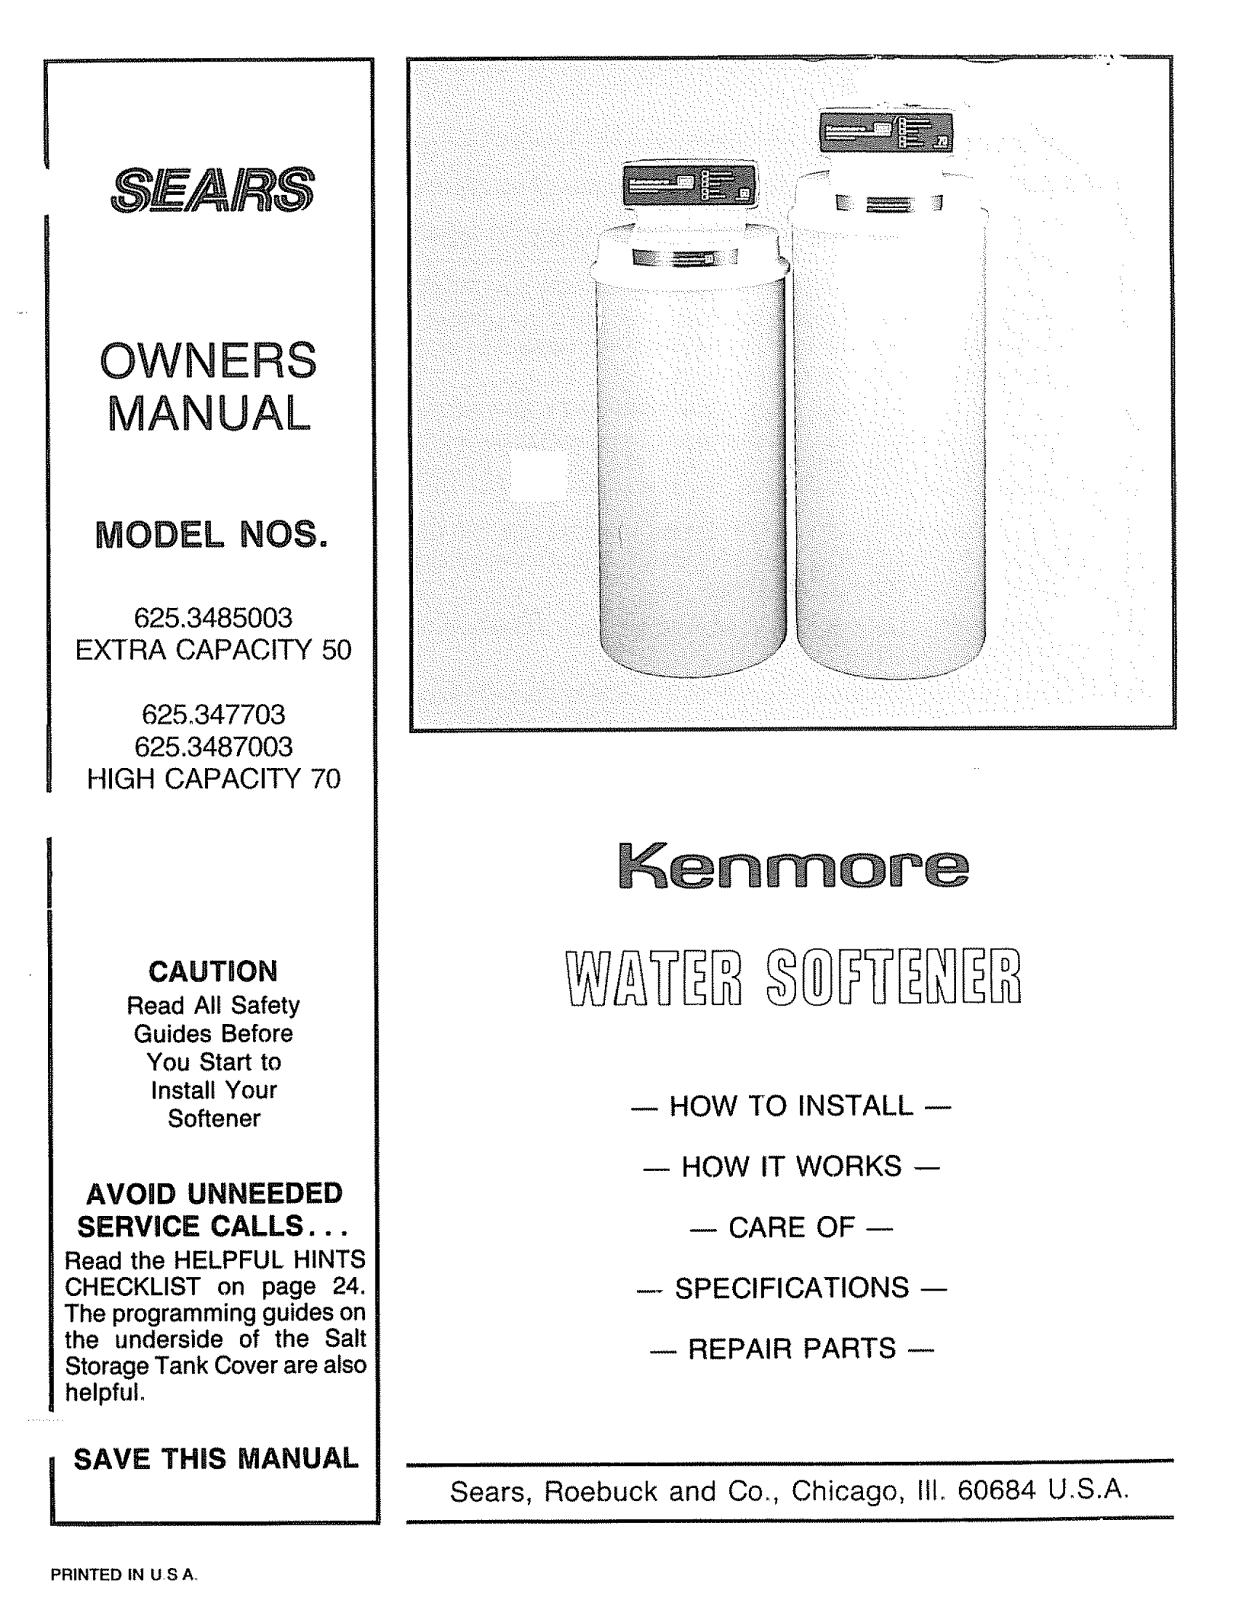 Kenmore 6253487003, 6253485003, 625347703 Owner’s Manual